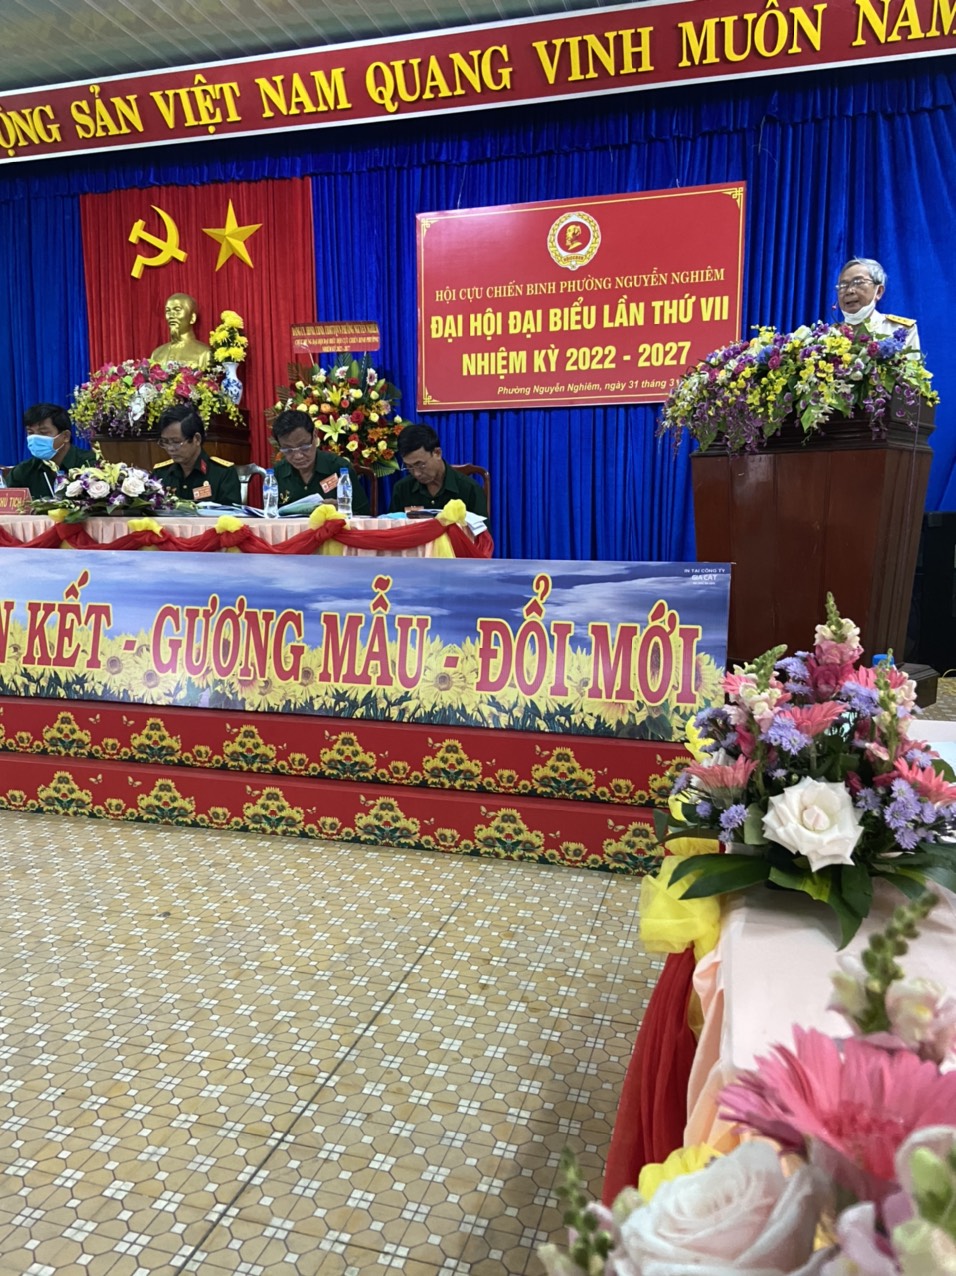 Hội Cựu chiến binh phường Nguyễn Nghiêm tổ chức Đại hội đại biểu lần thứ VII